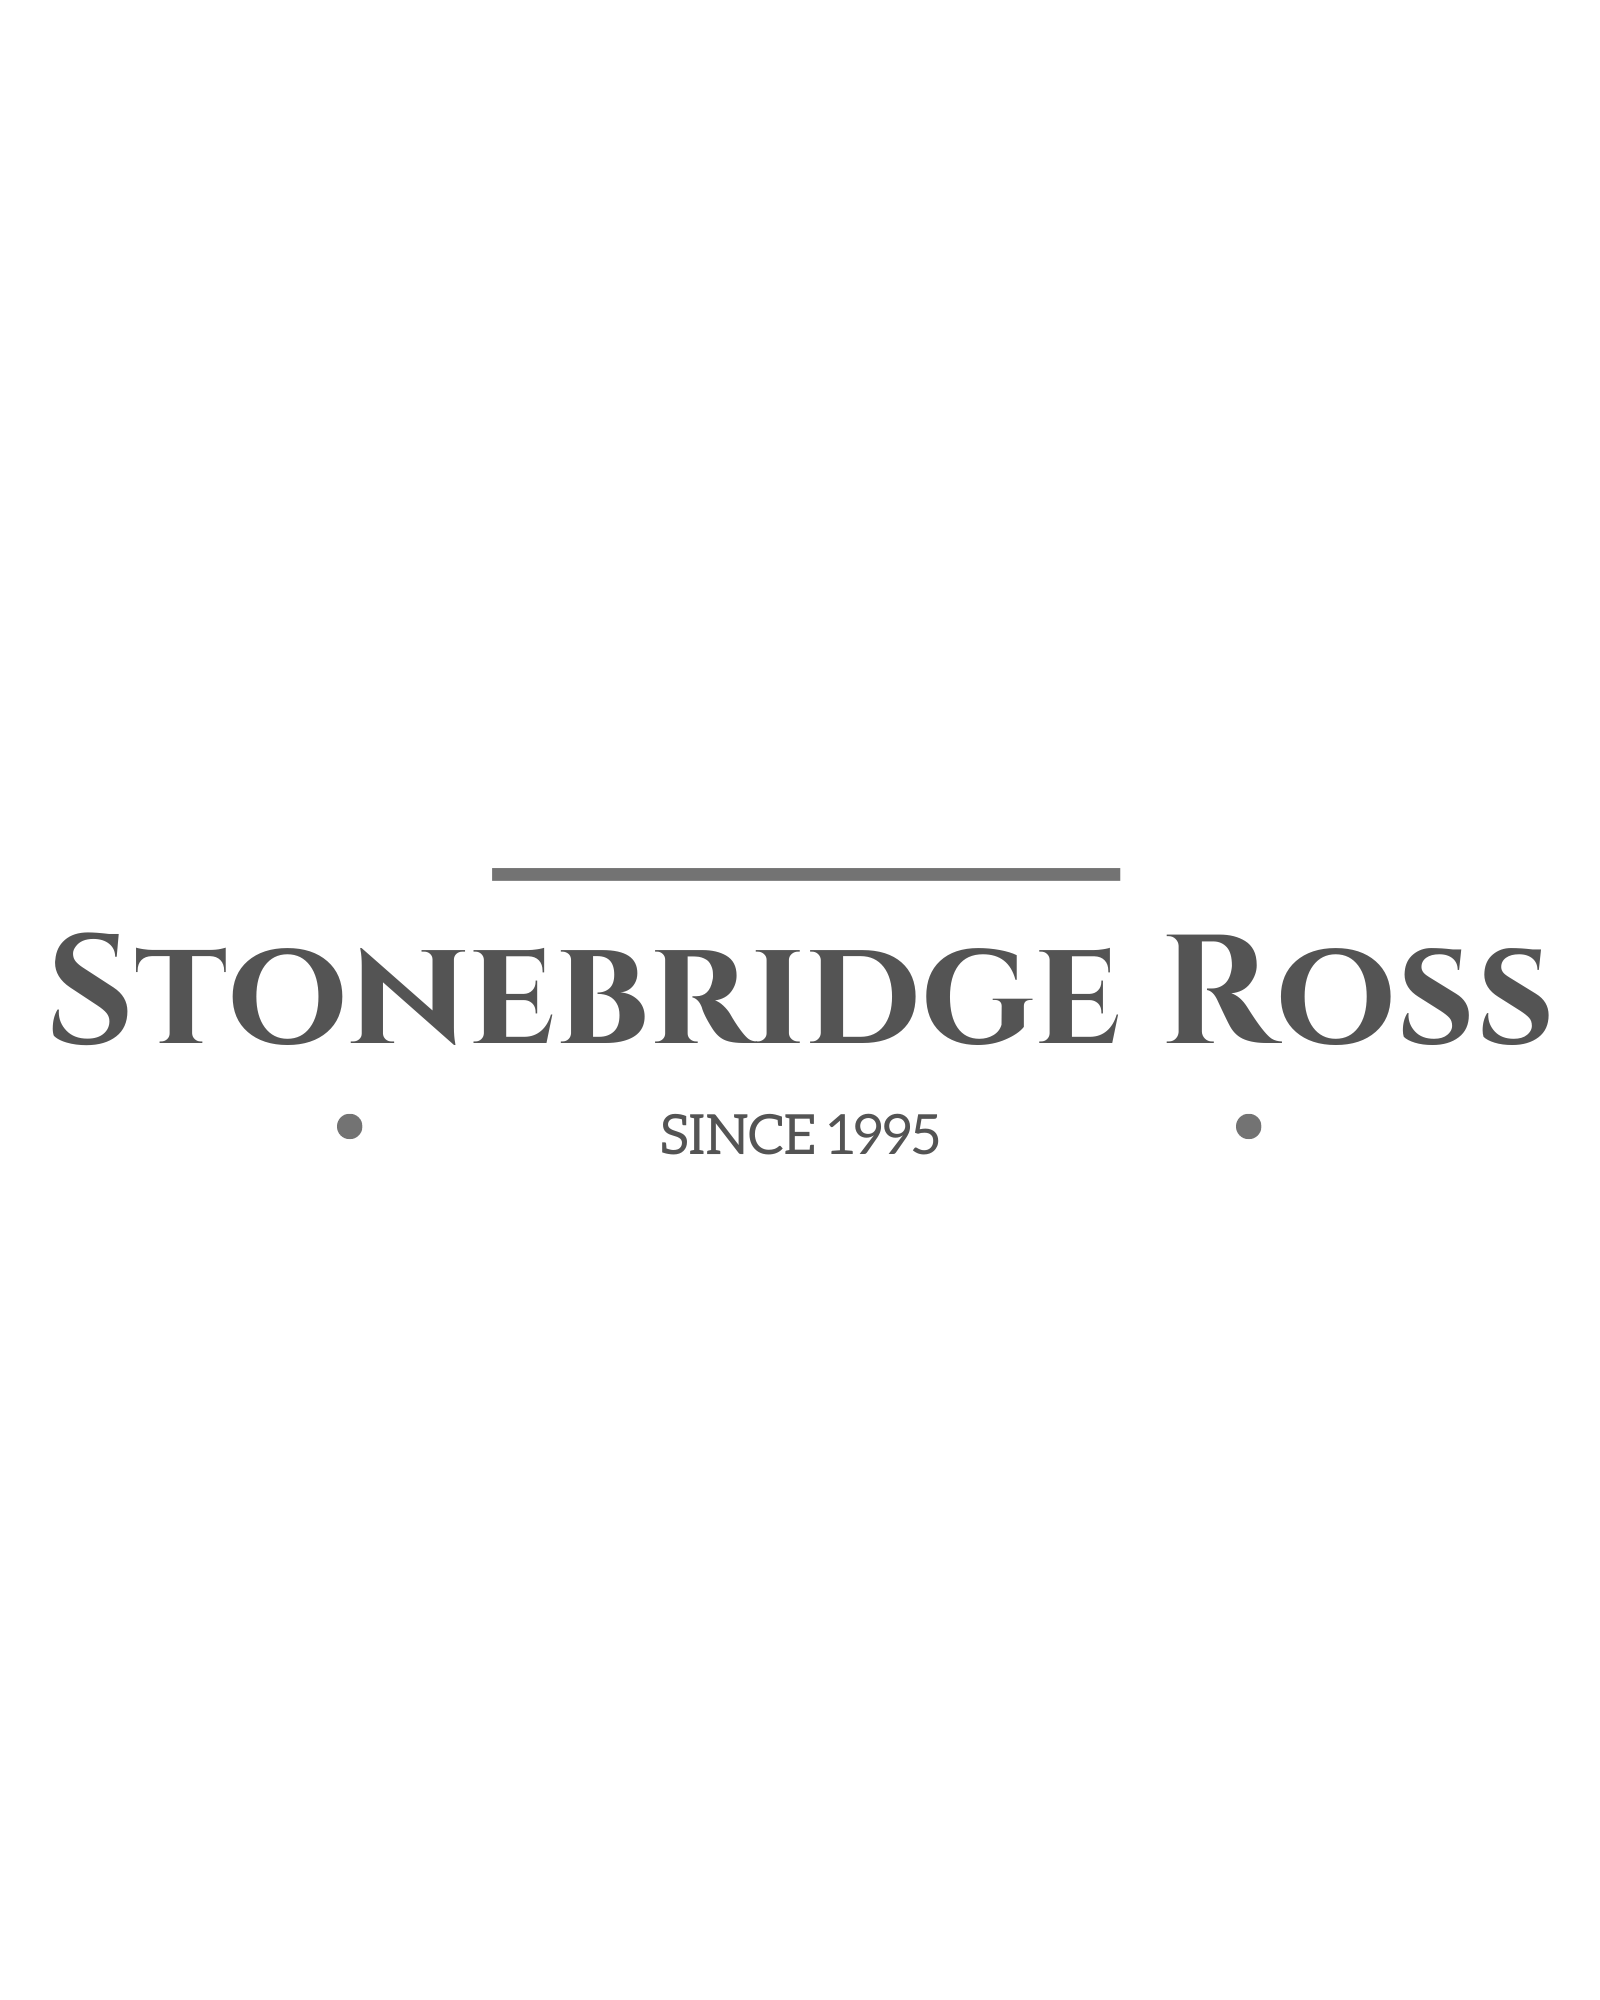 Stonebridge Ross